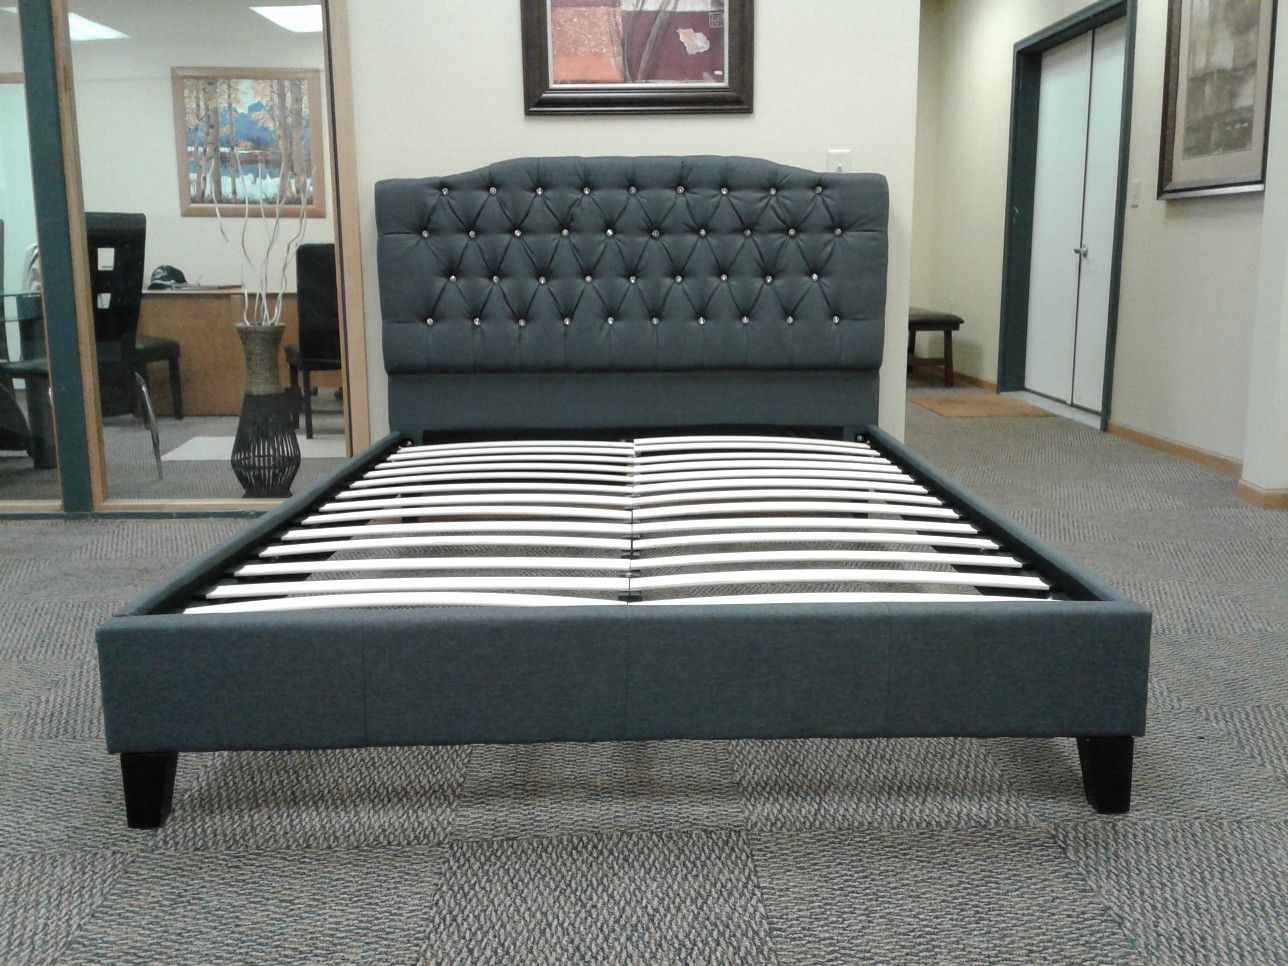 queen grey bed. brand new